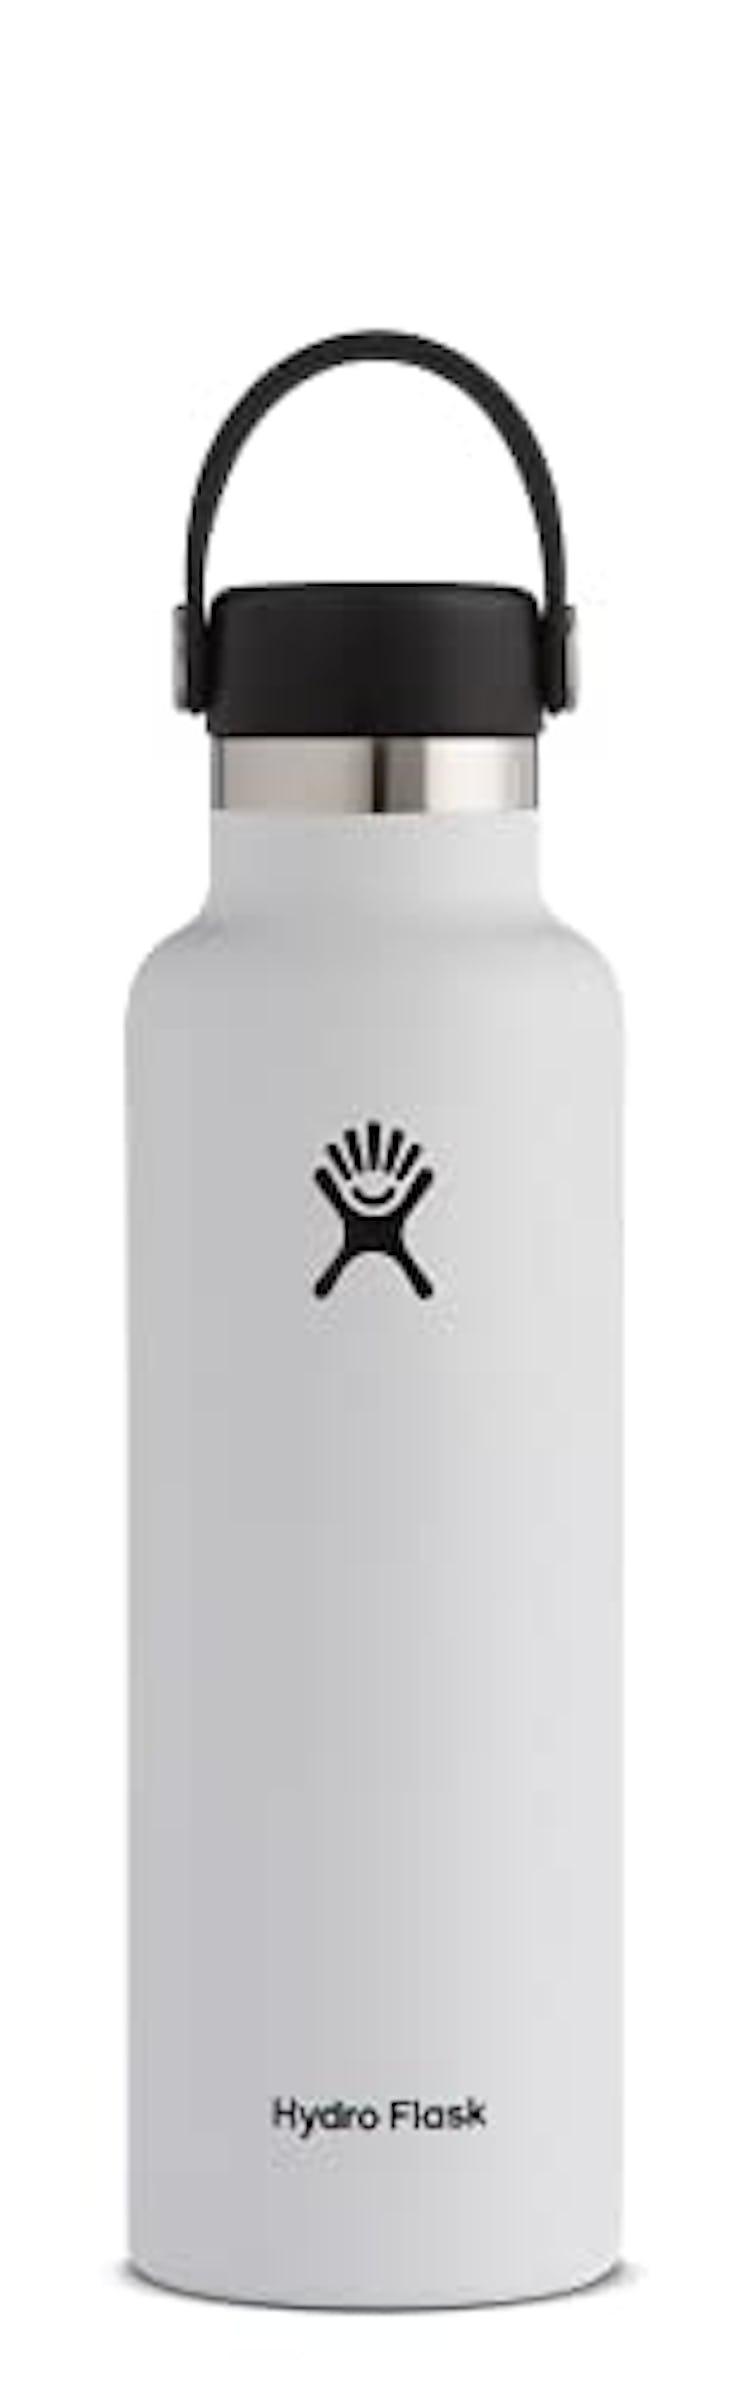 Hydro Flask Steel Water Bottle